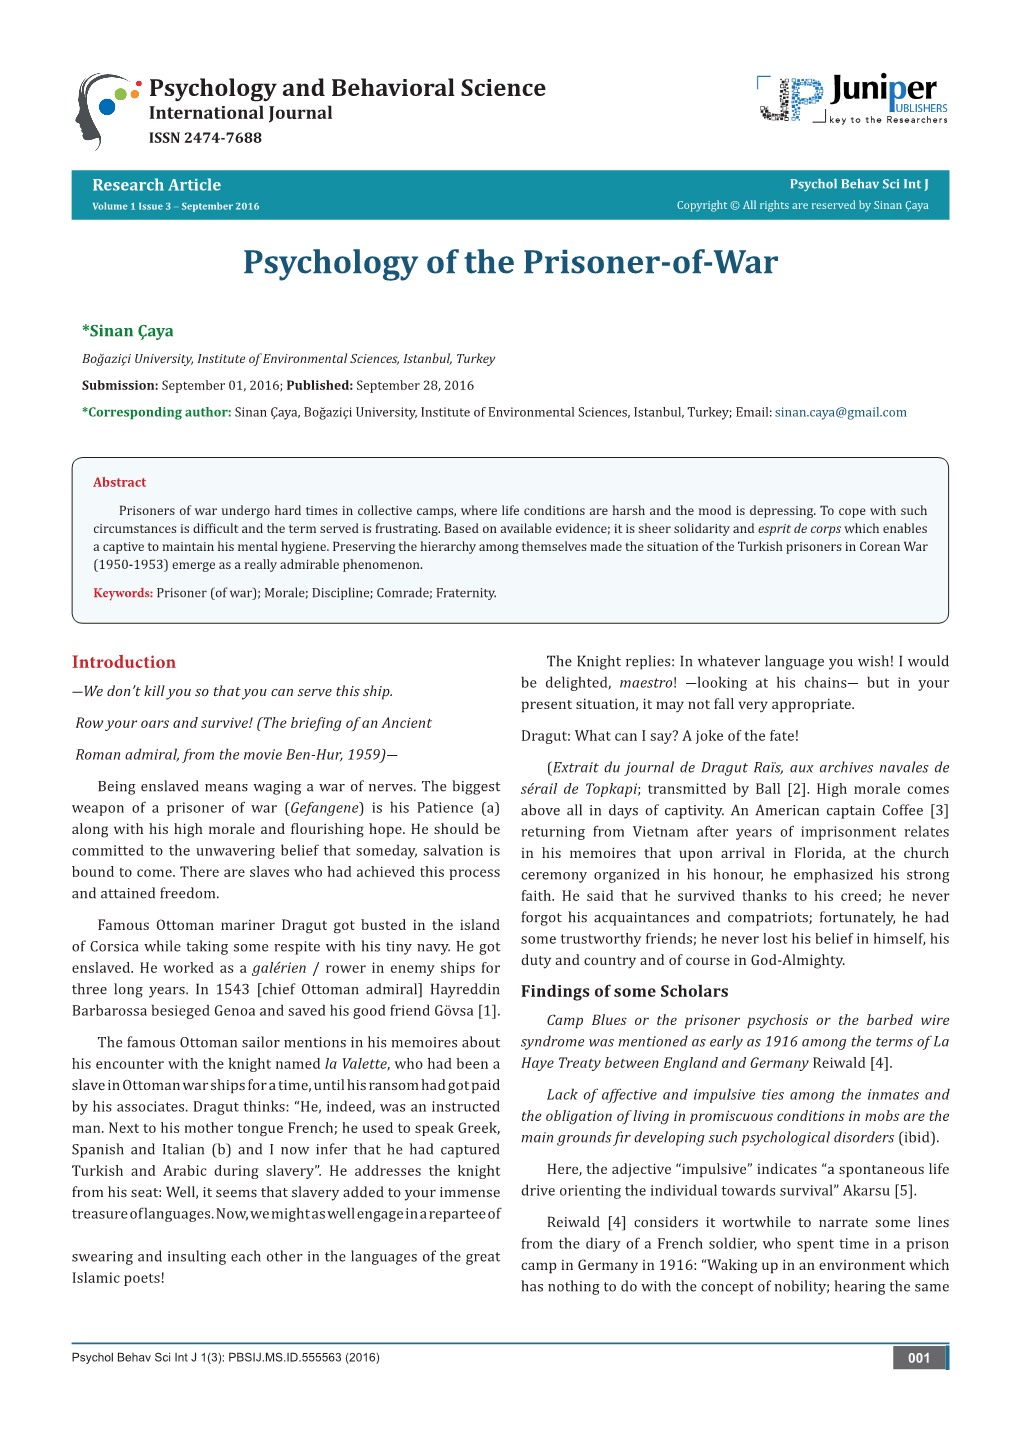 Psychology of the Prisoner-Of-War